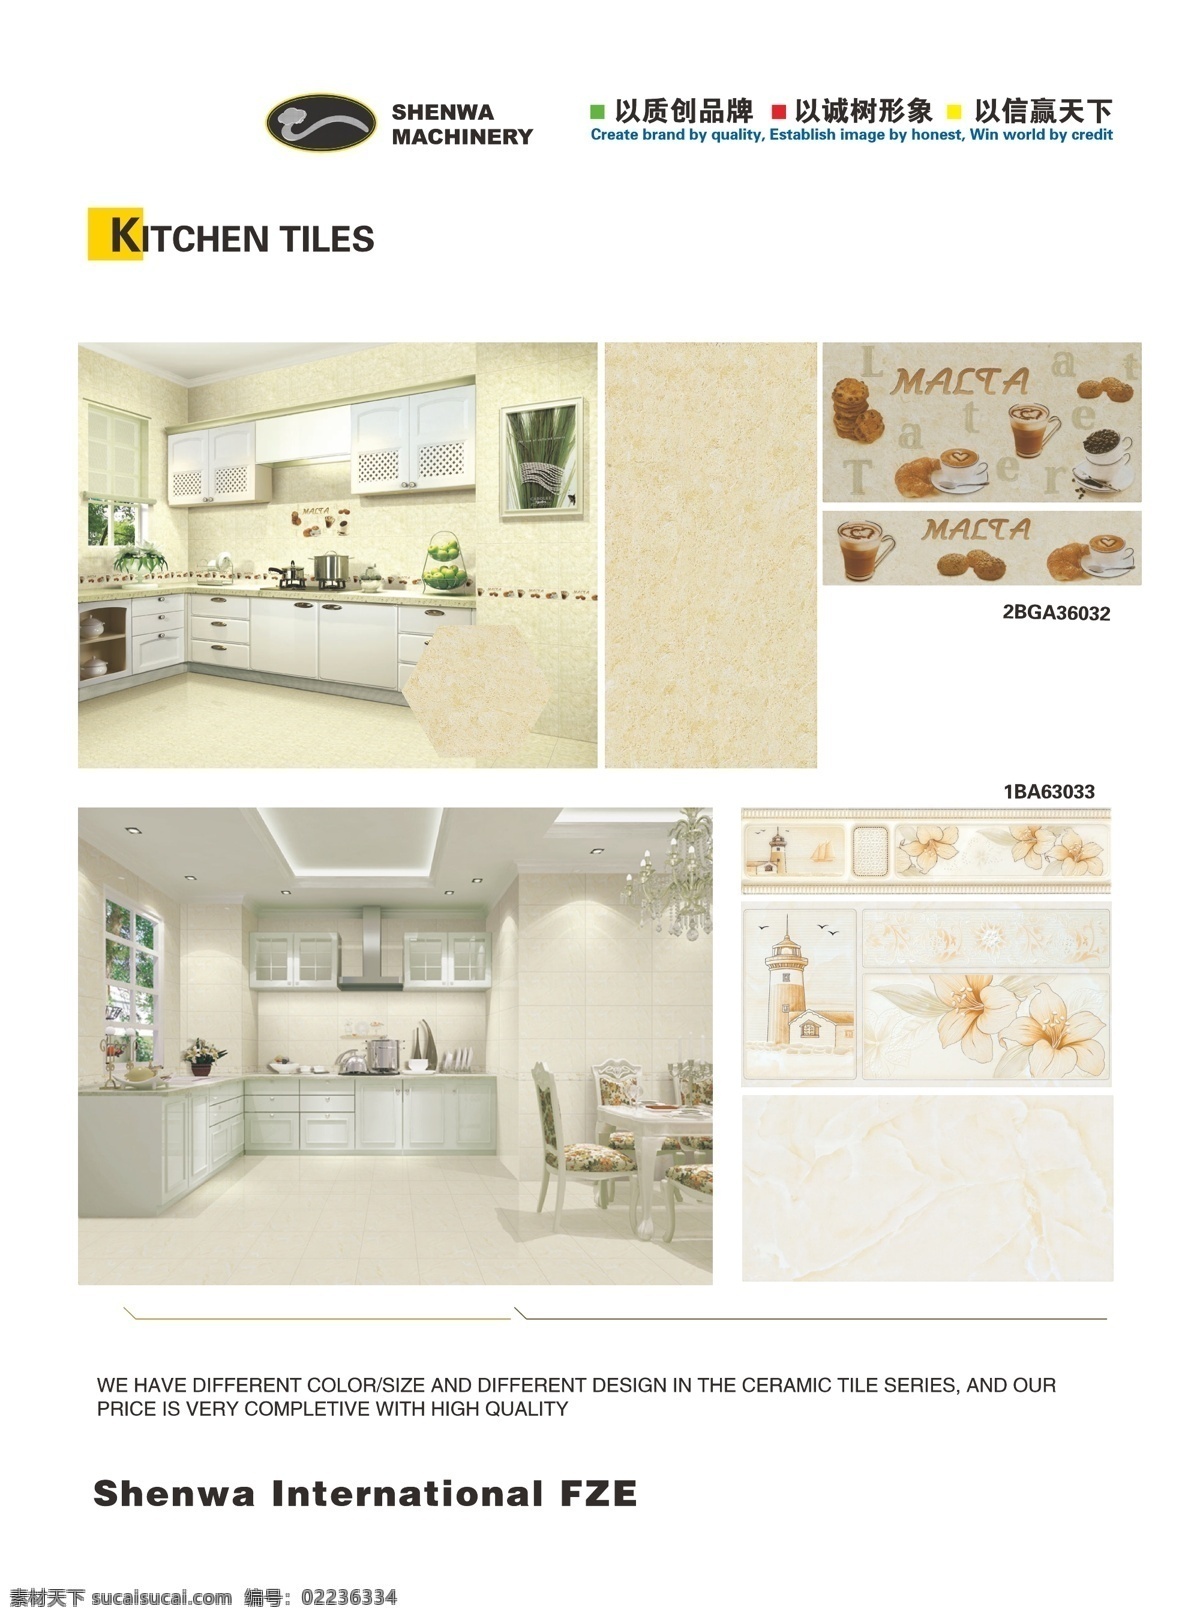 瓷砖 dm宣传单 厨房 单页 绿色 瓷砖矢量素材 瓷砖模板下载 矢量 装饰素材 室内设计